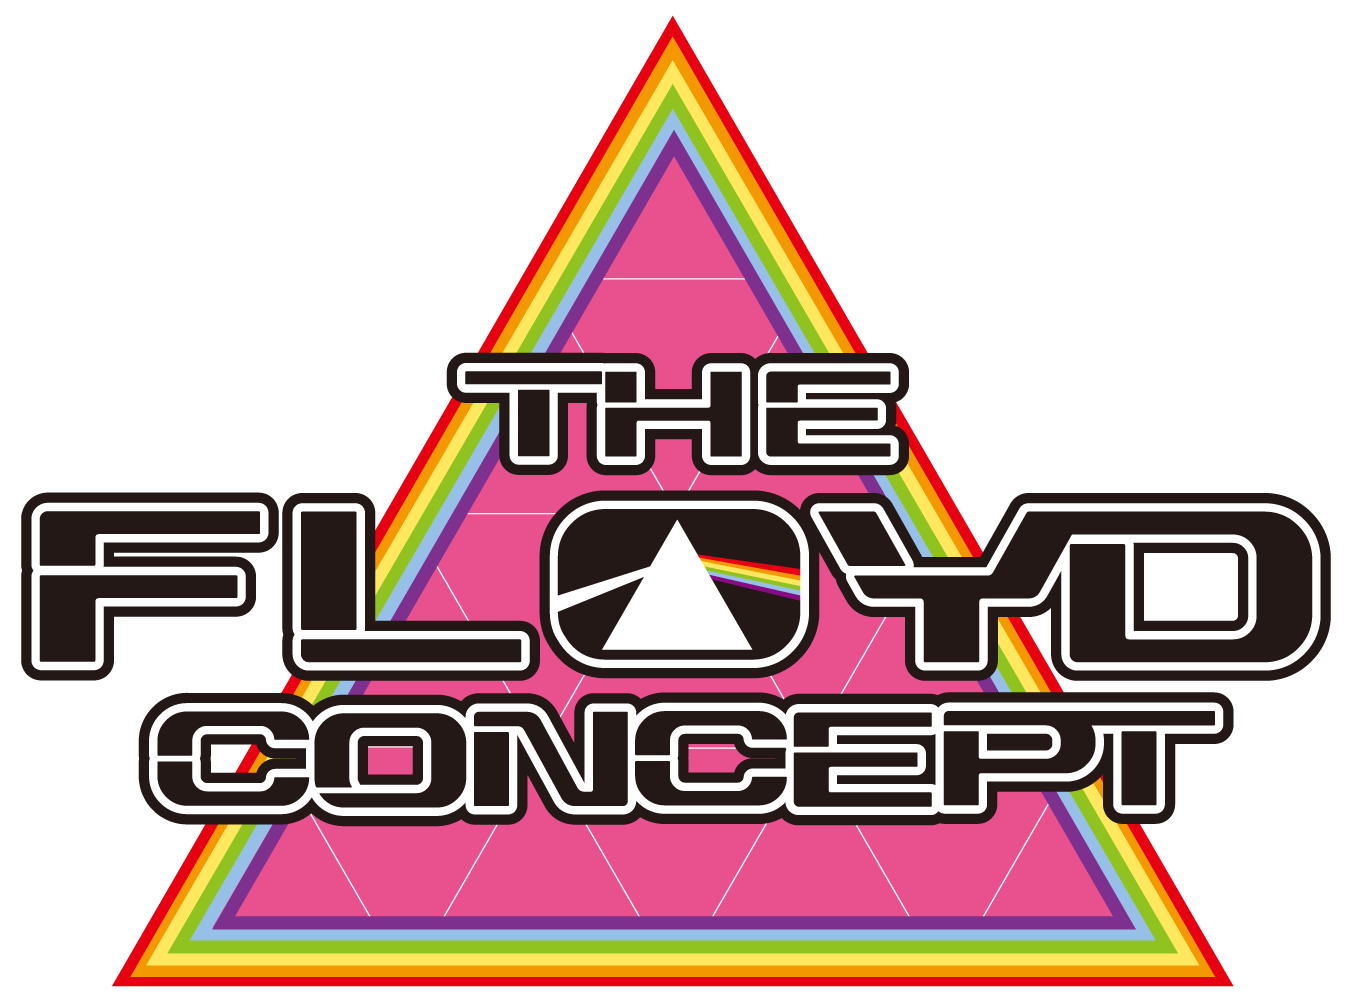 The Floyd Concept (Images courtesy of Lappen Enterprises/Barry Entertainment/The Floyd Concept)